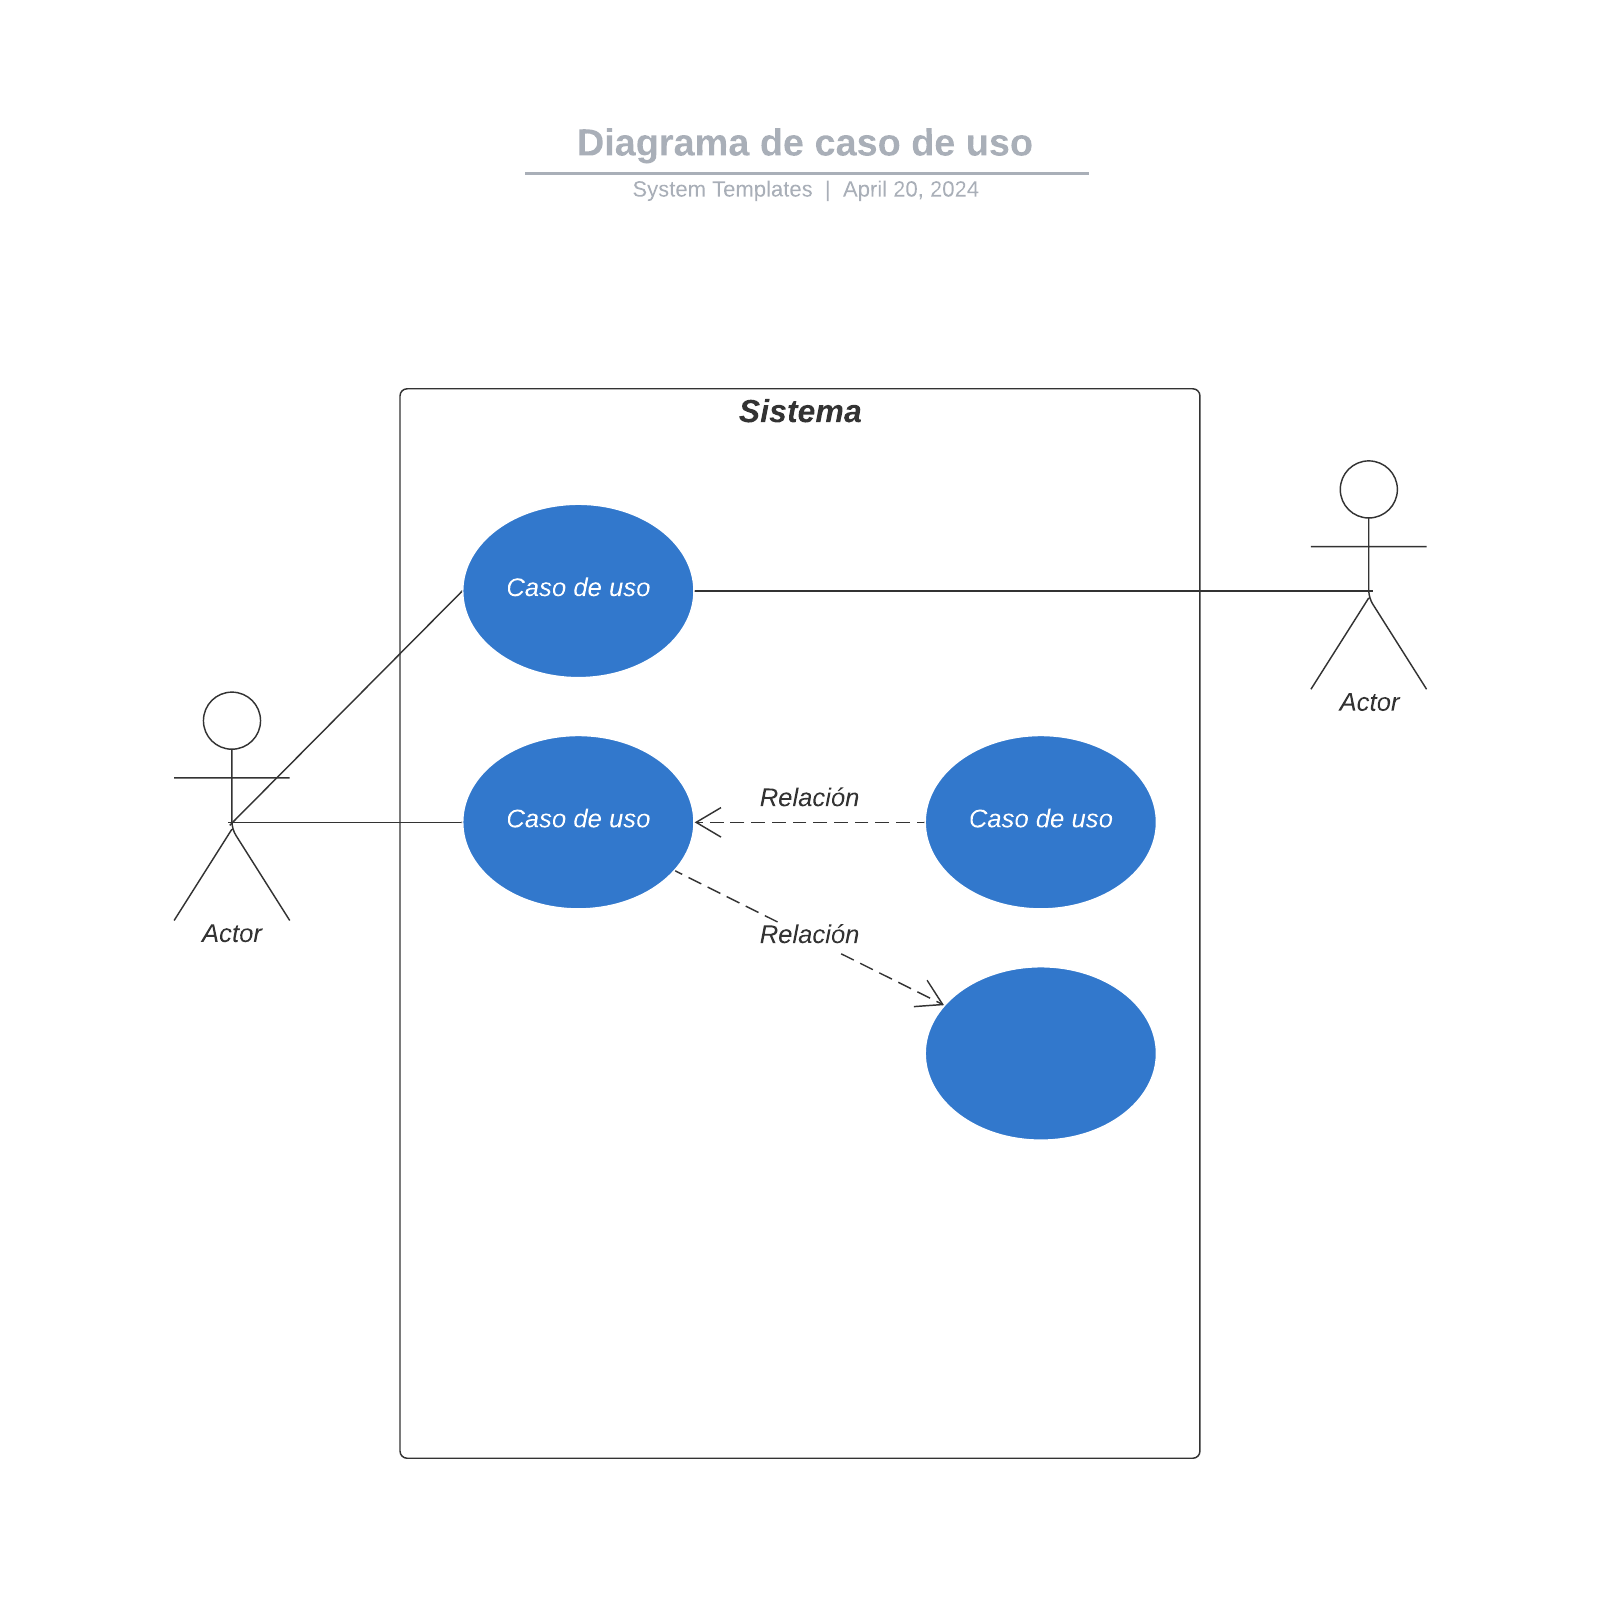 Diagrama de caso de uso example